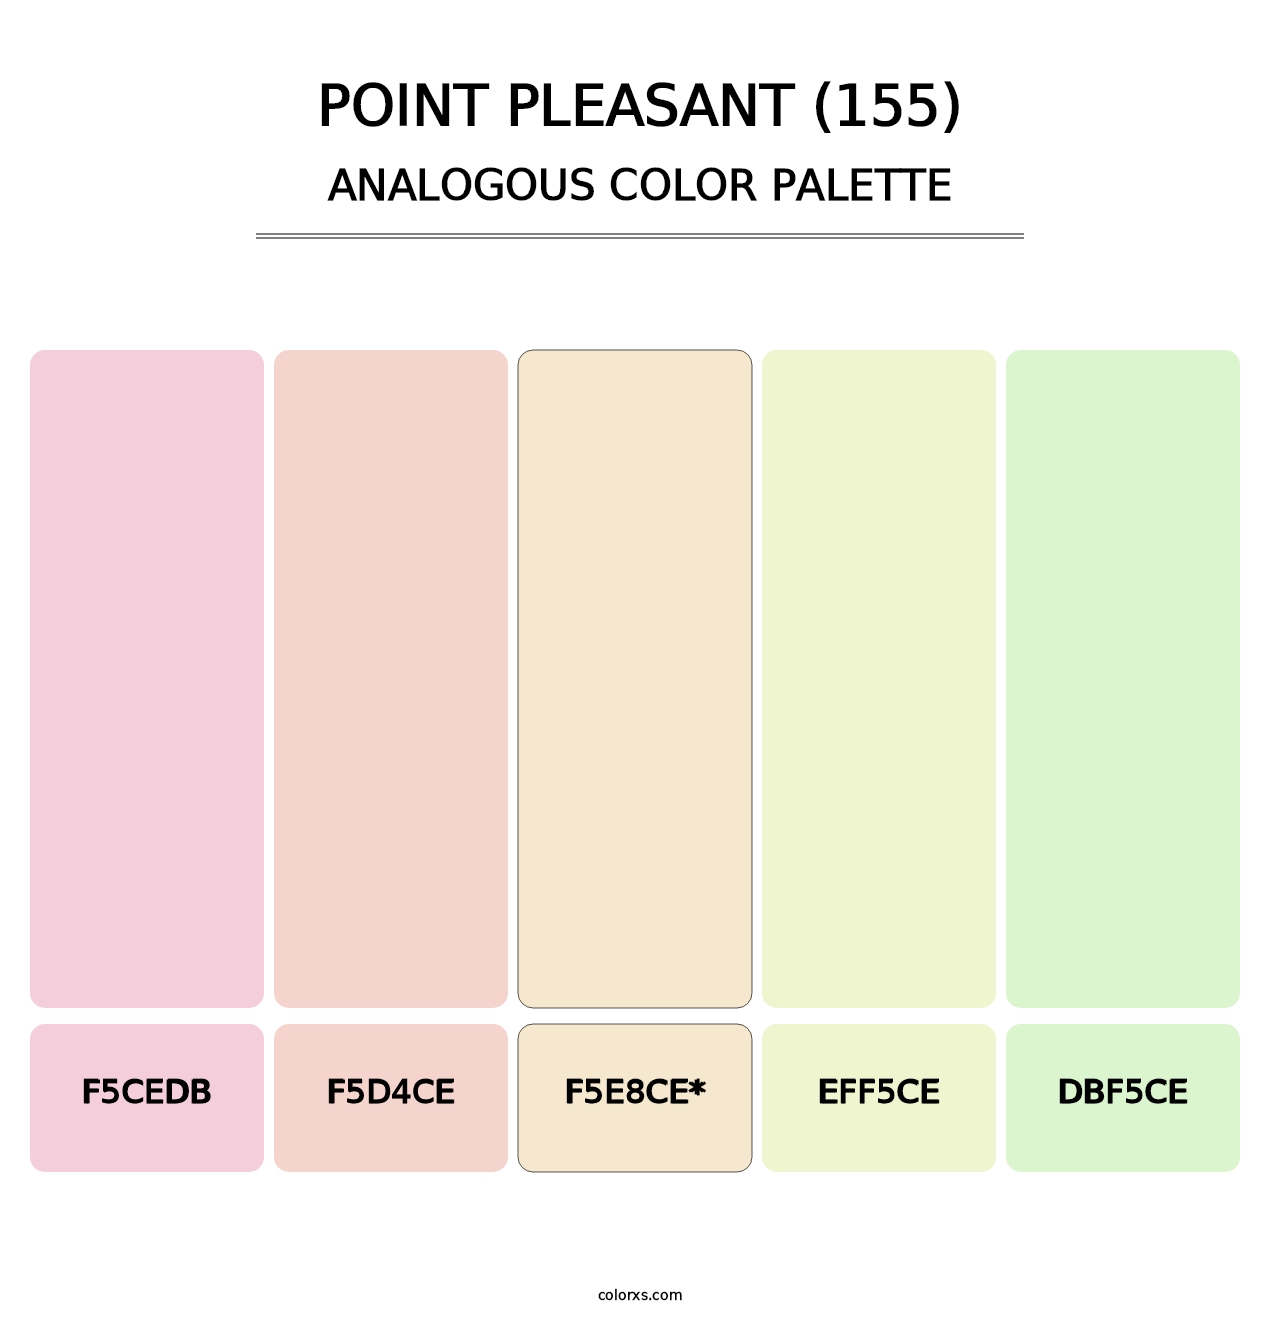 Point Pleasant (155) - Analogous Color Palette